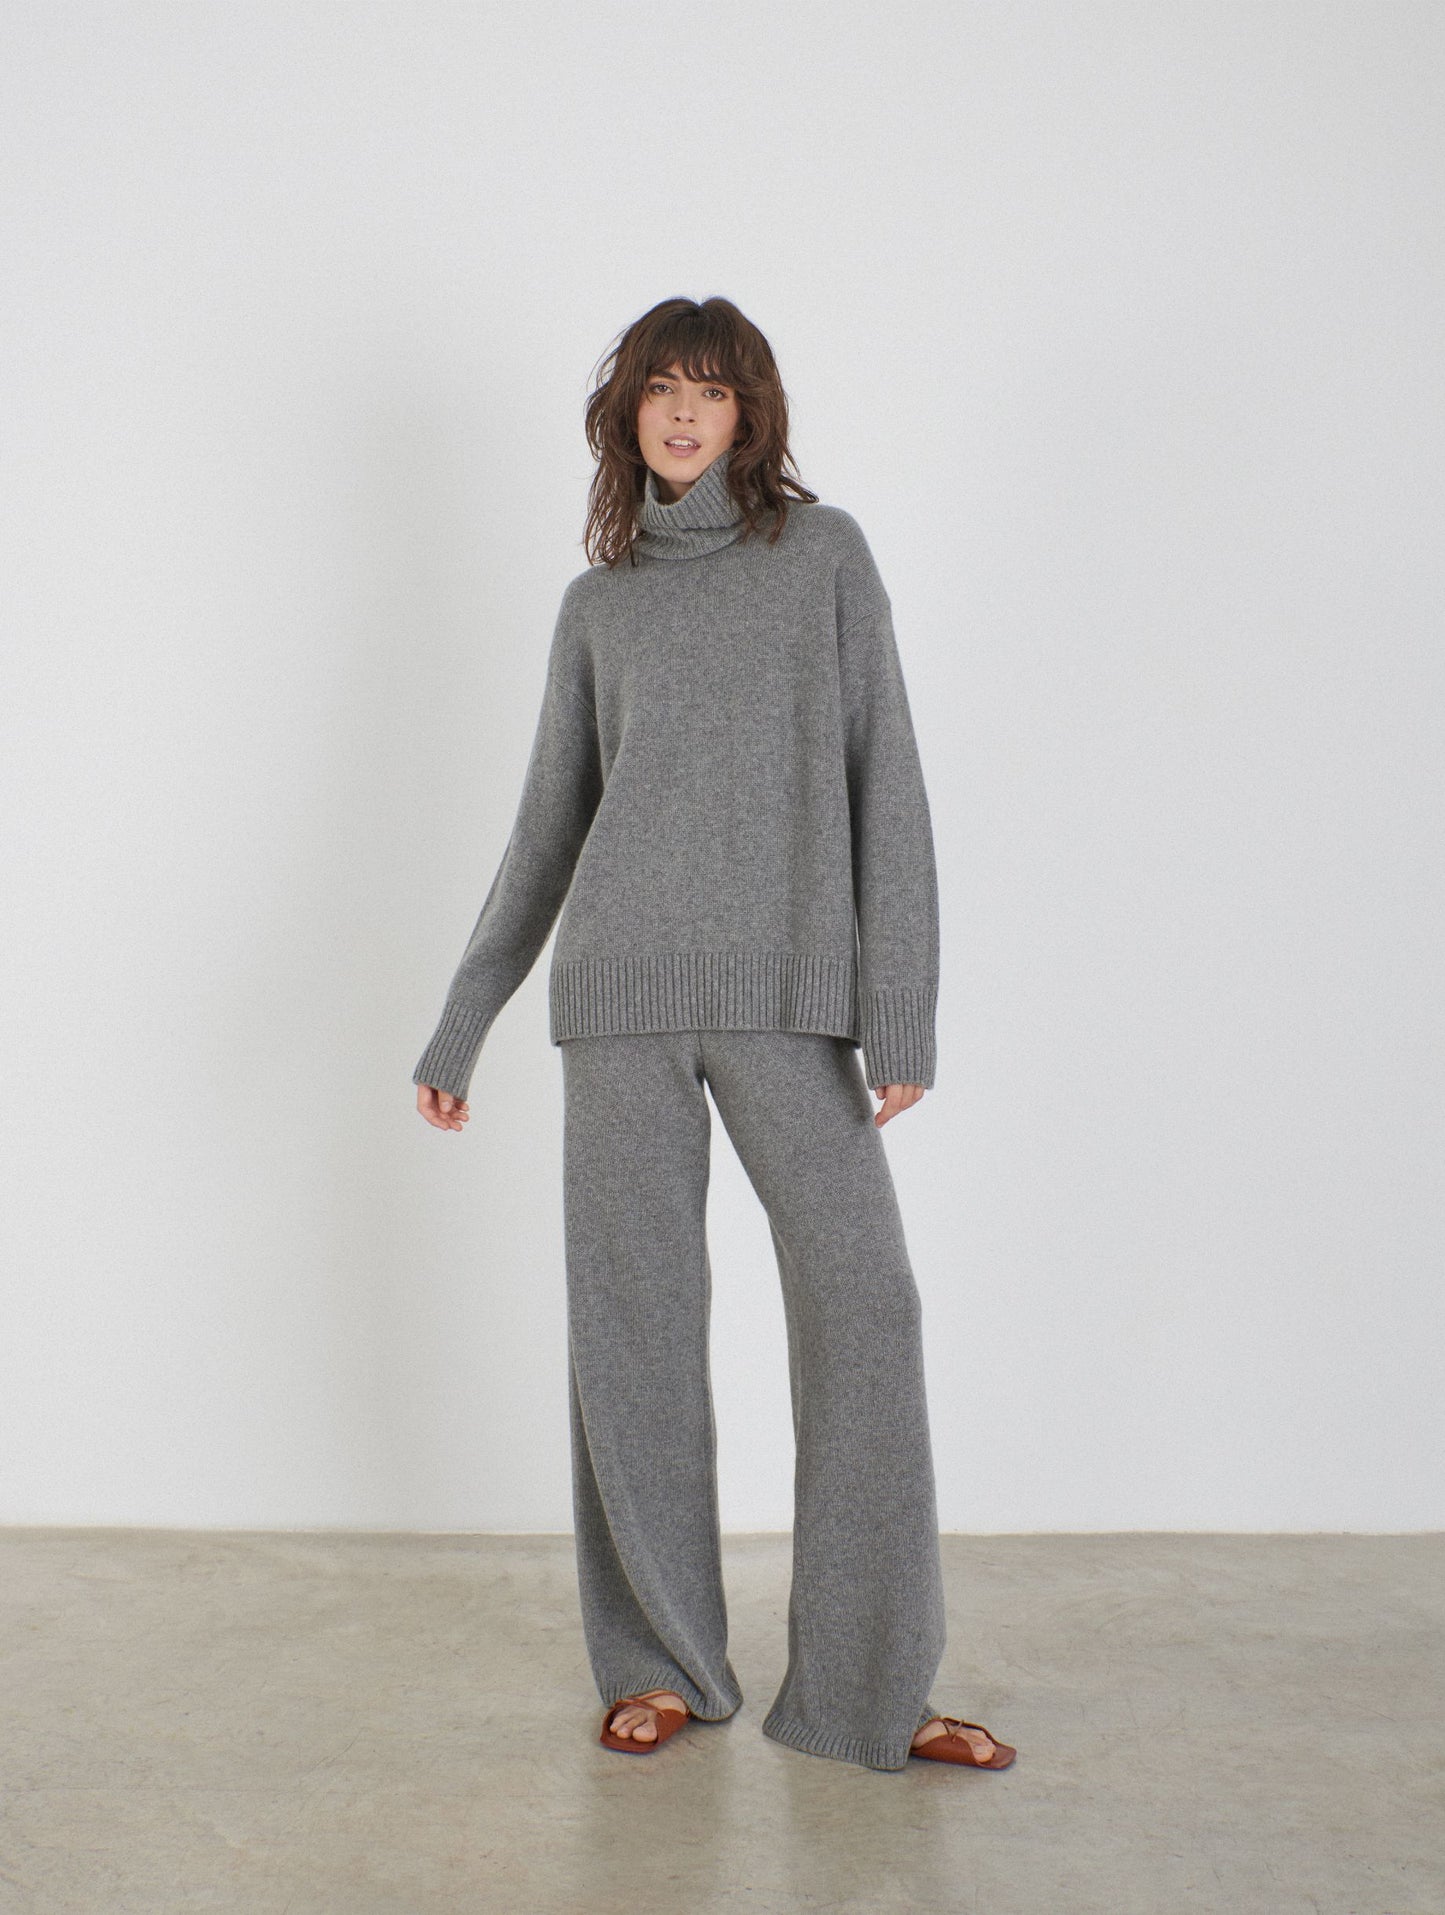 Cashmere knitted turtleneck jumper